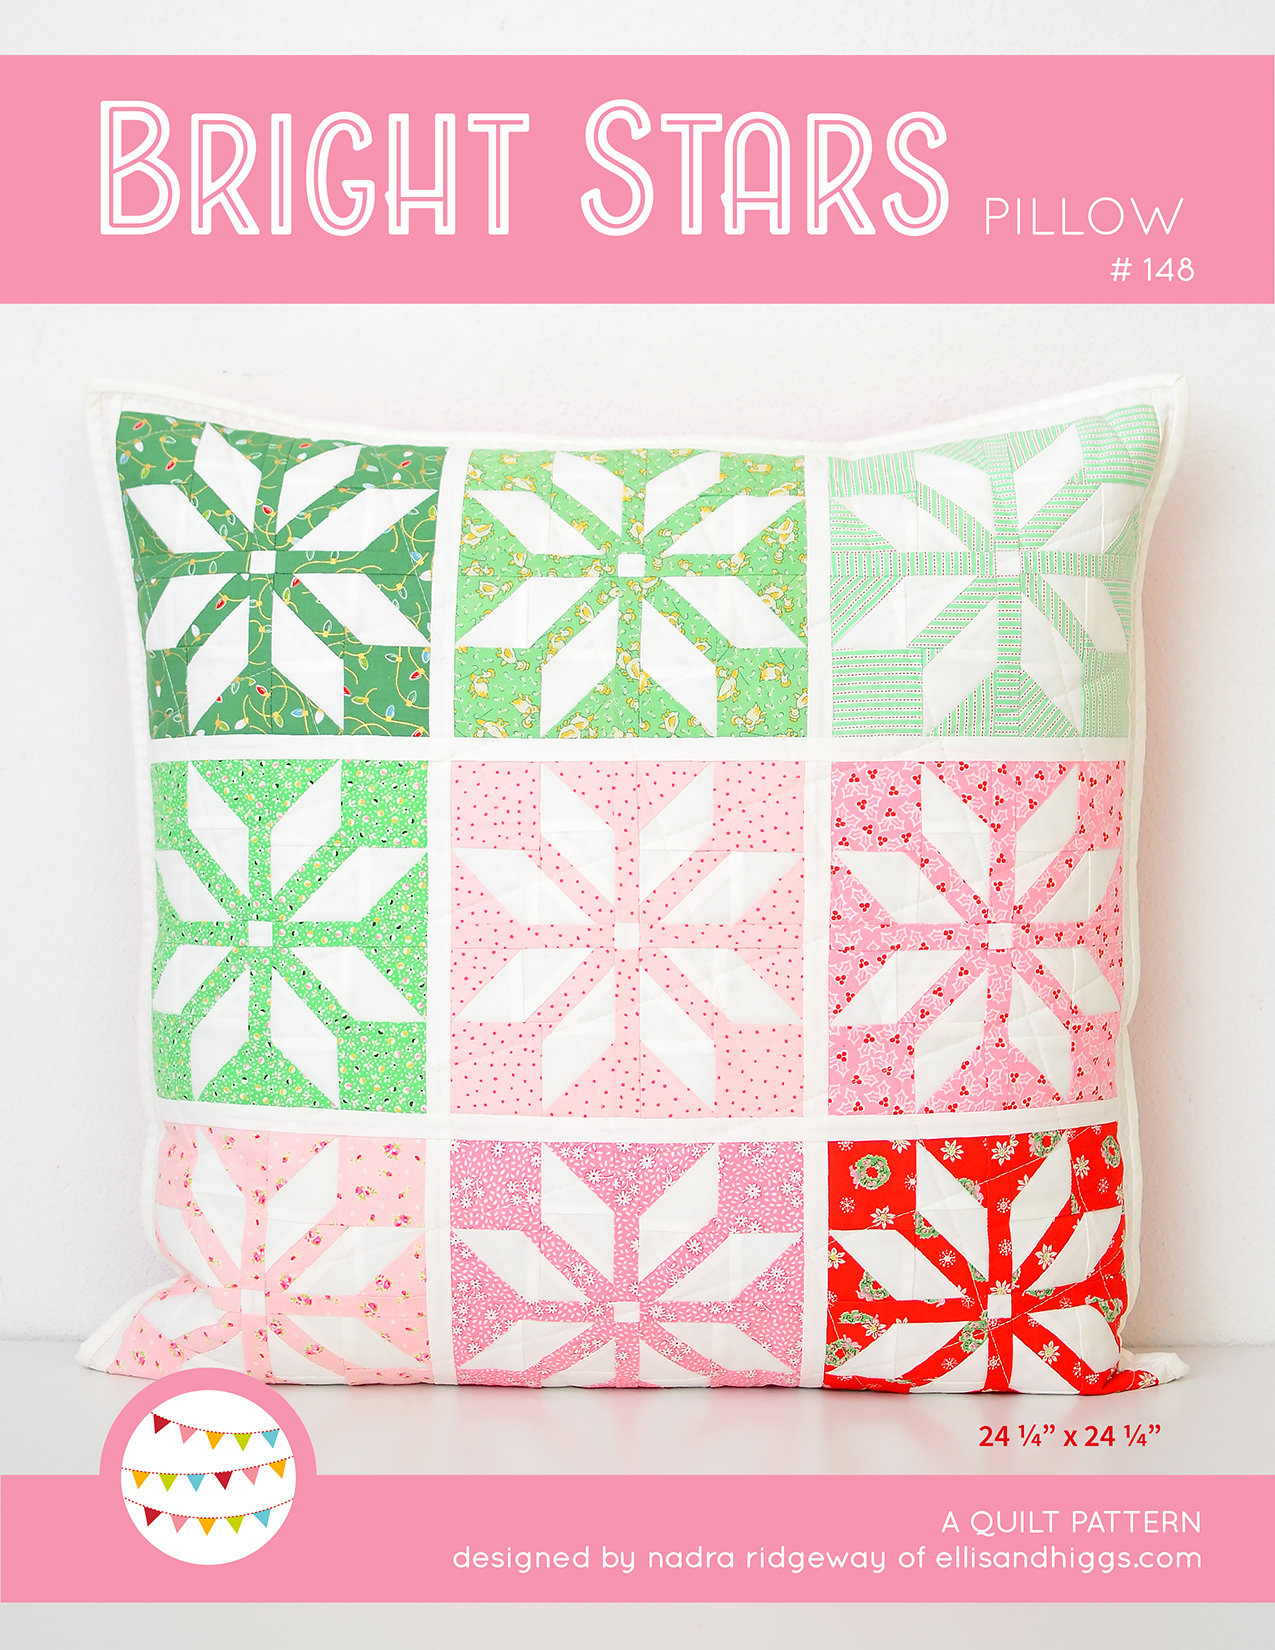 Star quilt pillow